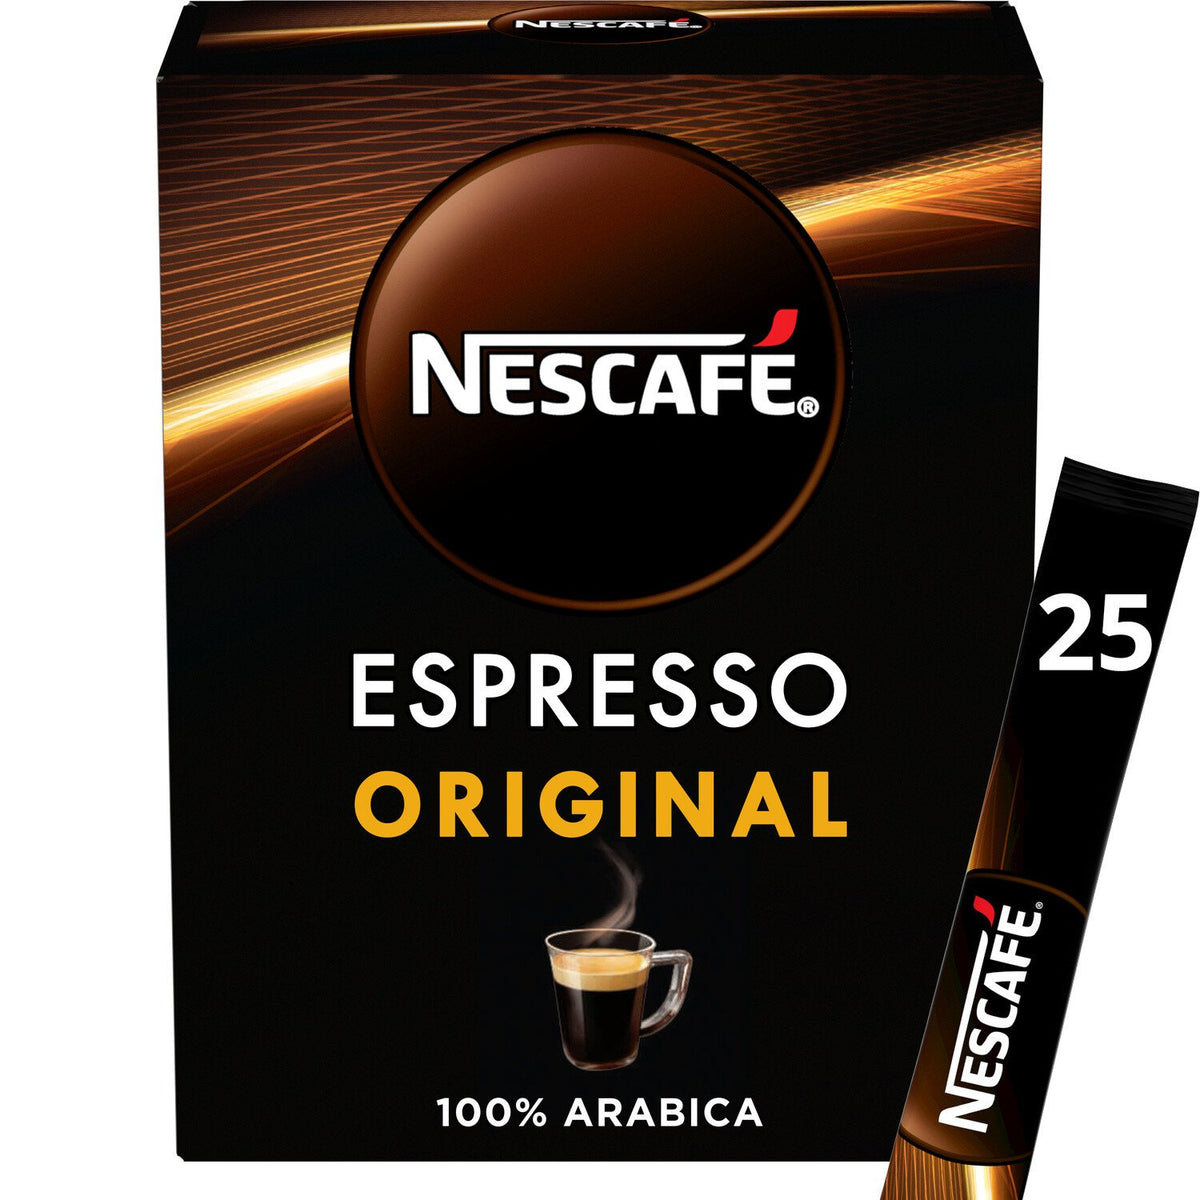 NESCAFÉ Café Soluble Espresso Original 25 sticks 45g -F123